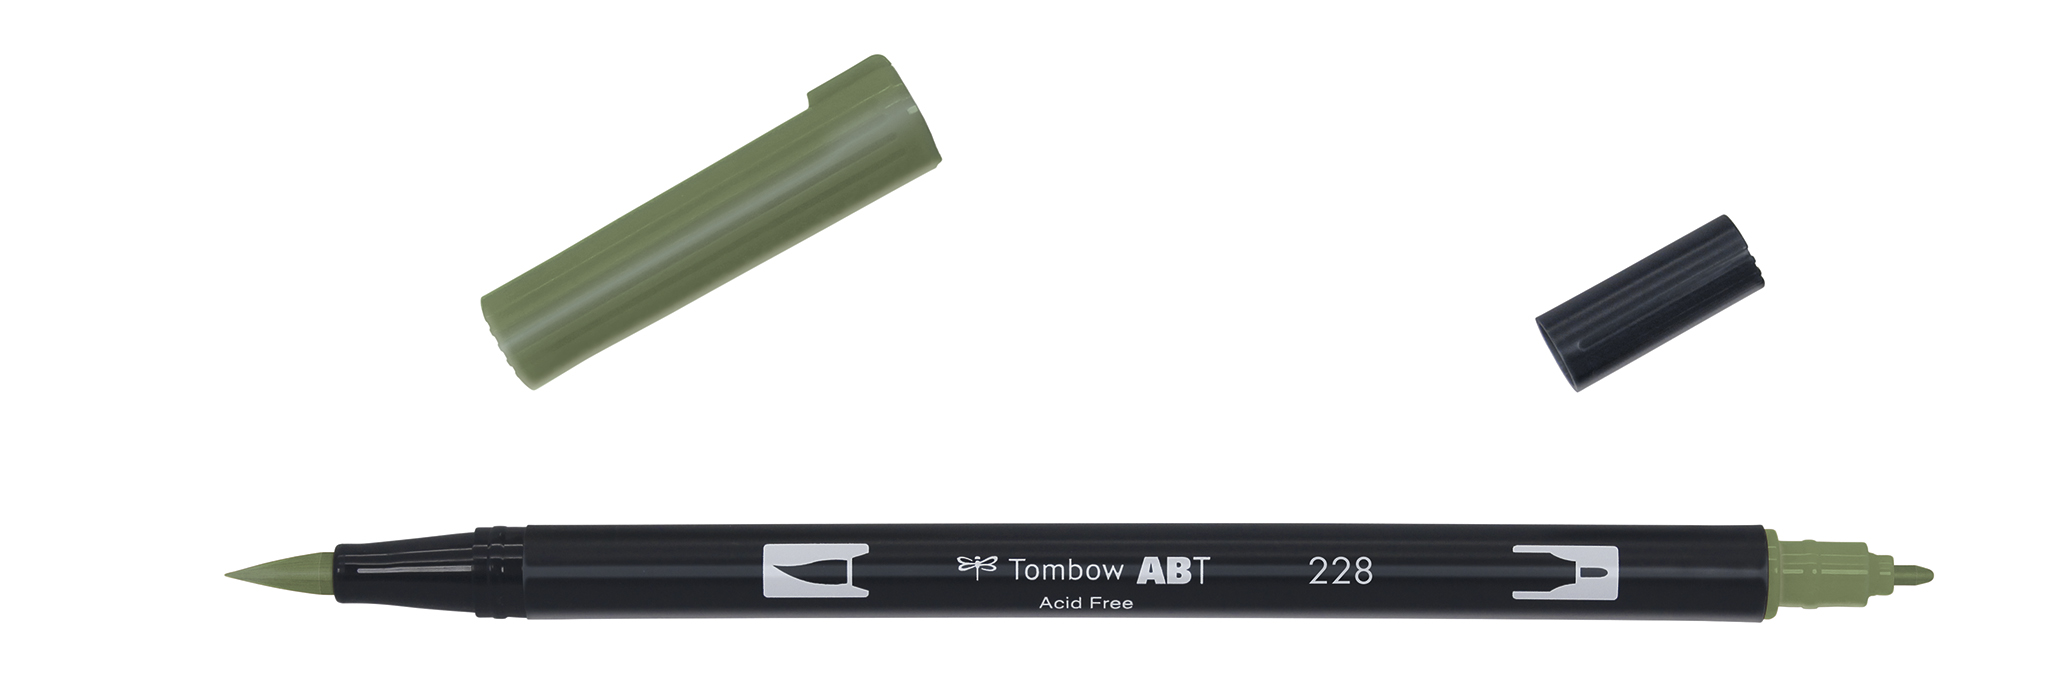 Tombow Art Brush Pen, gray green